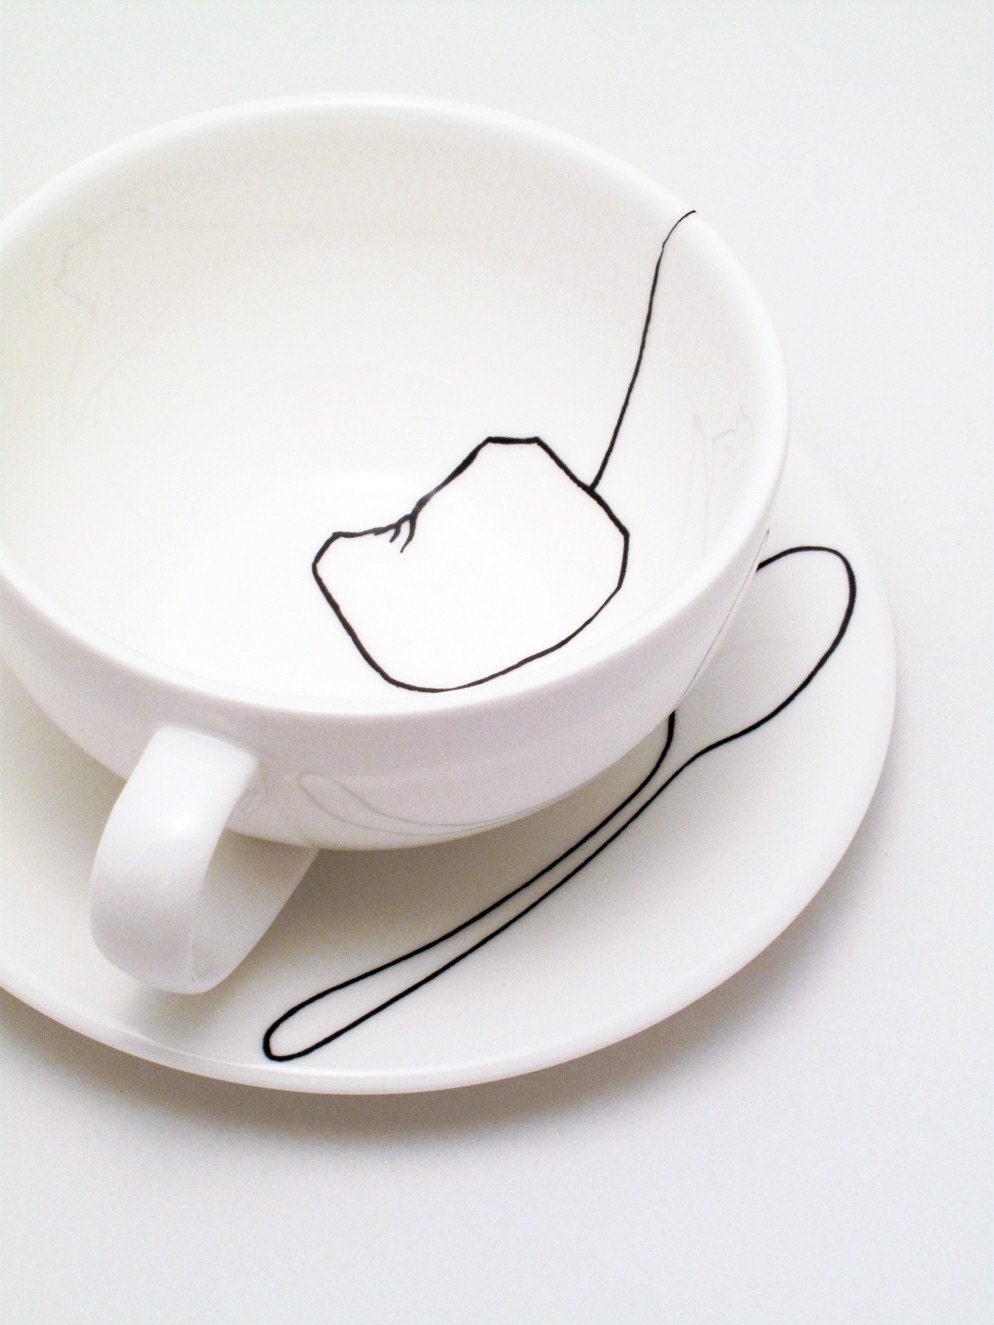 Teabag Teaspoon Cup and Saucer